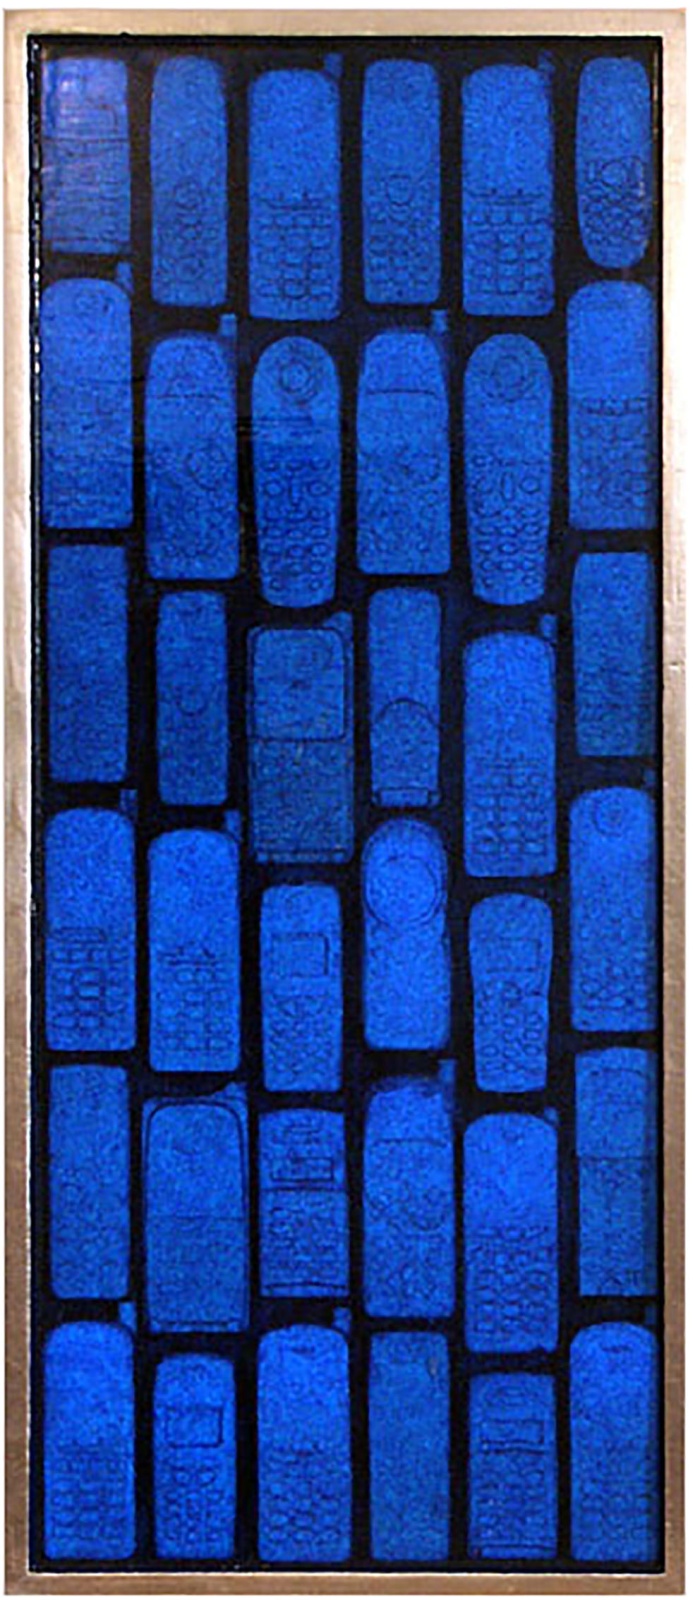 LE VOCI DELLE SIRENE . 2006 - teatrino con 36 telefoni, colore acrilico, resina, foglia d'oro, cm. 86 x 38 x 5
Collezione Francesca Casa, Roma